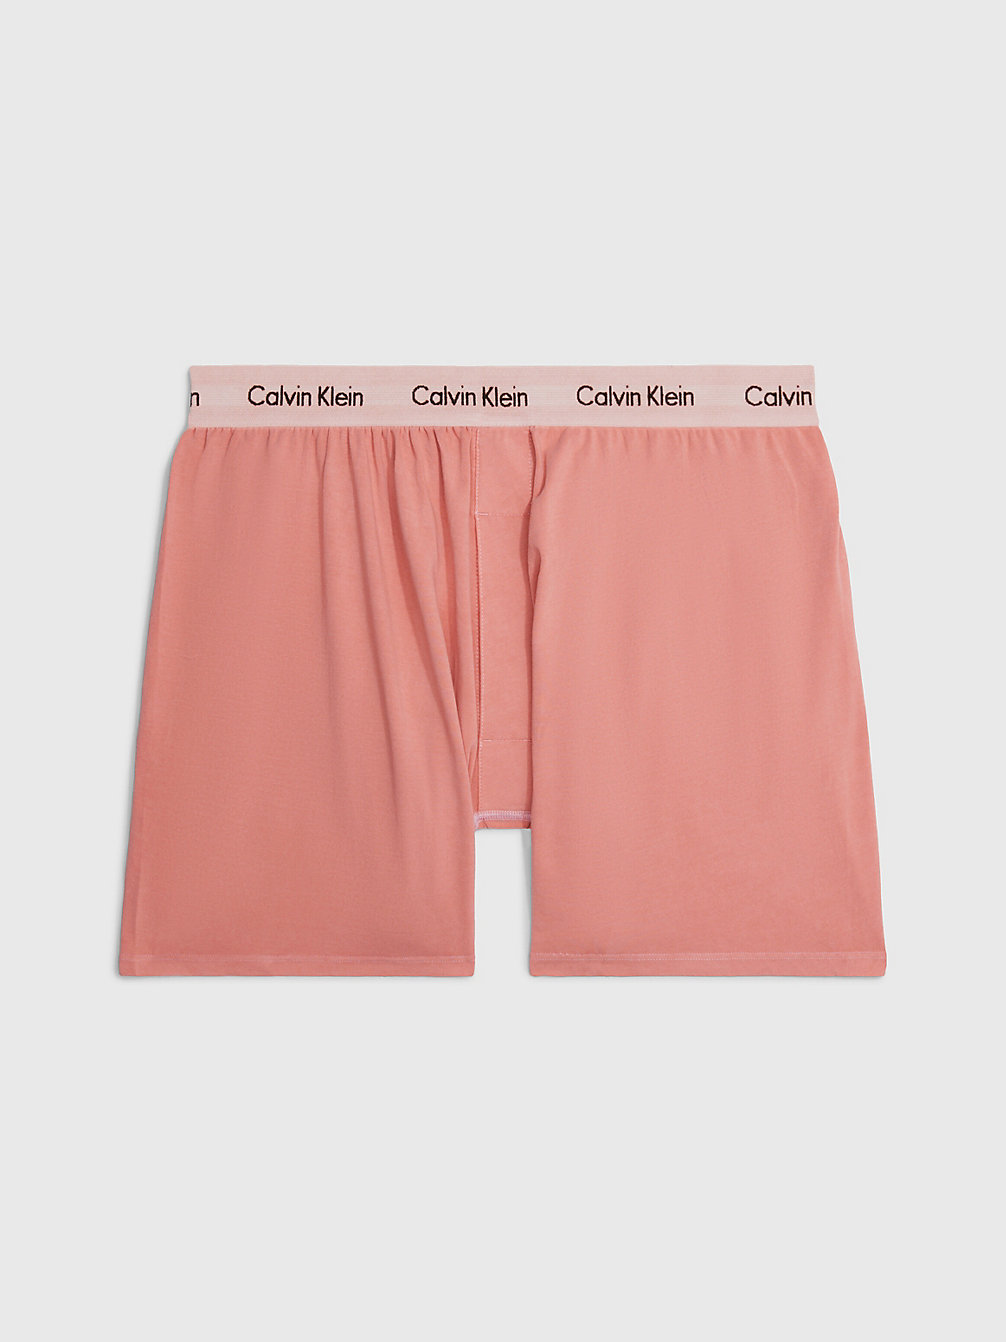 RUST Boxers - Modern Cotton undefined men Calvin Klein